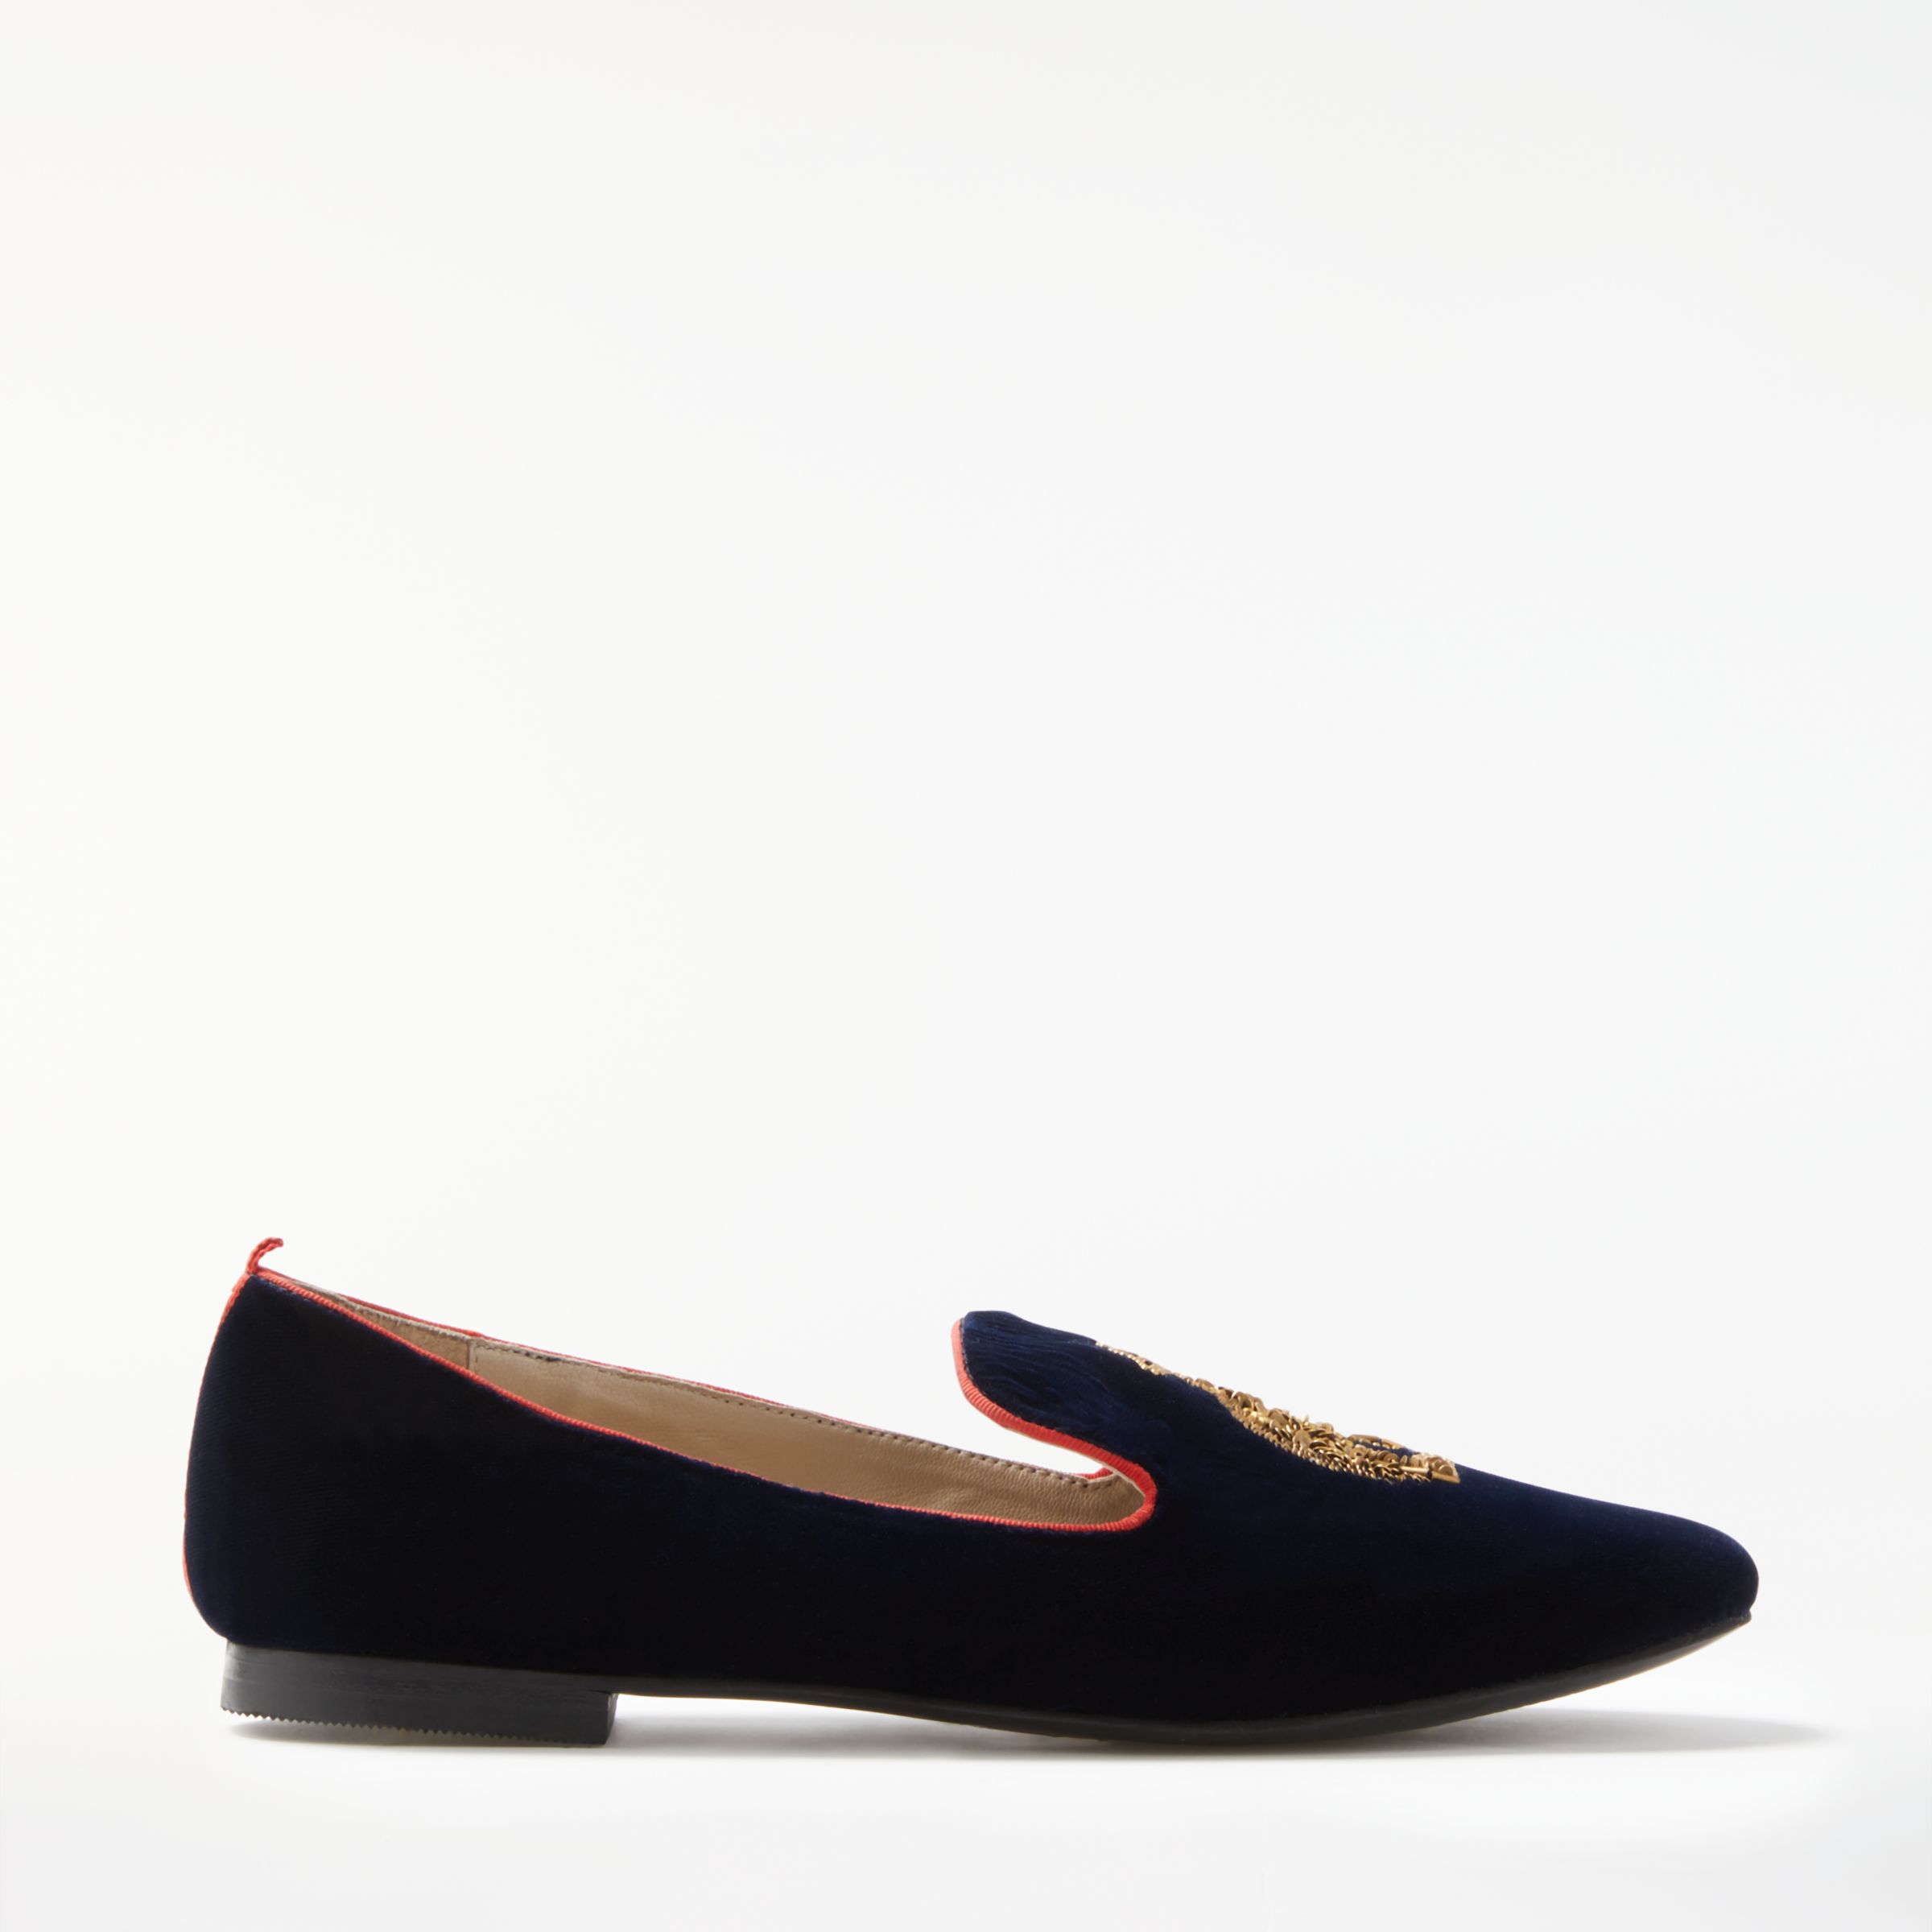 Boden Violetta Embellished Loafers, Navy, 7